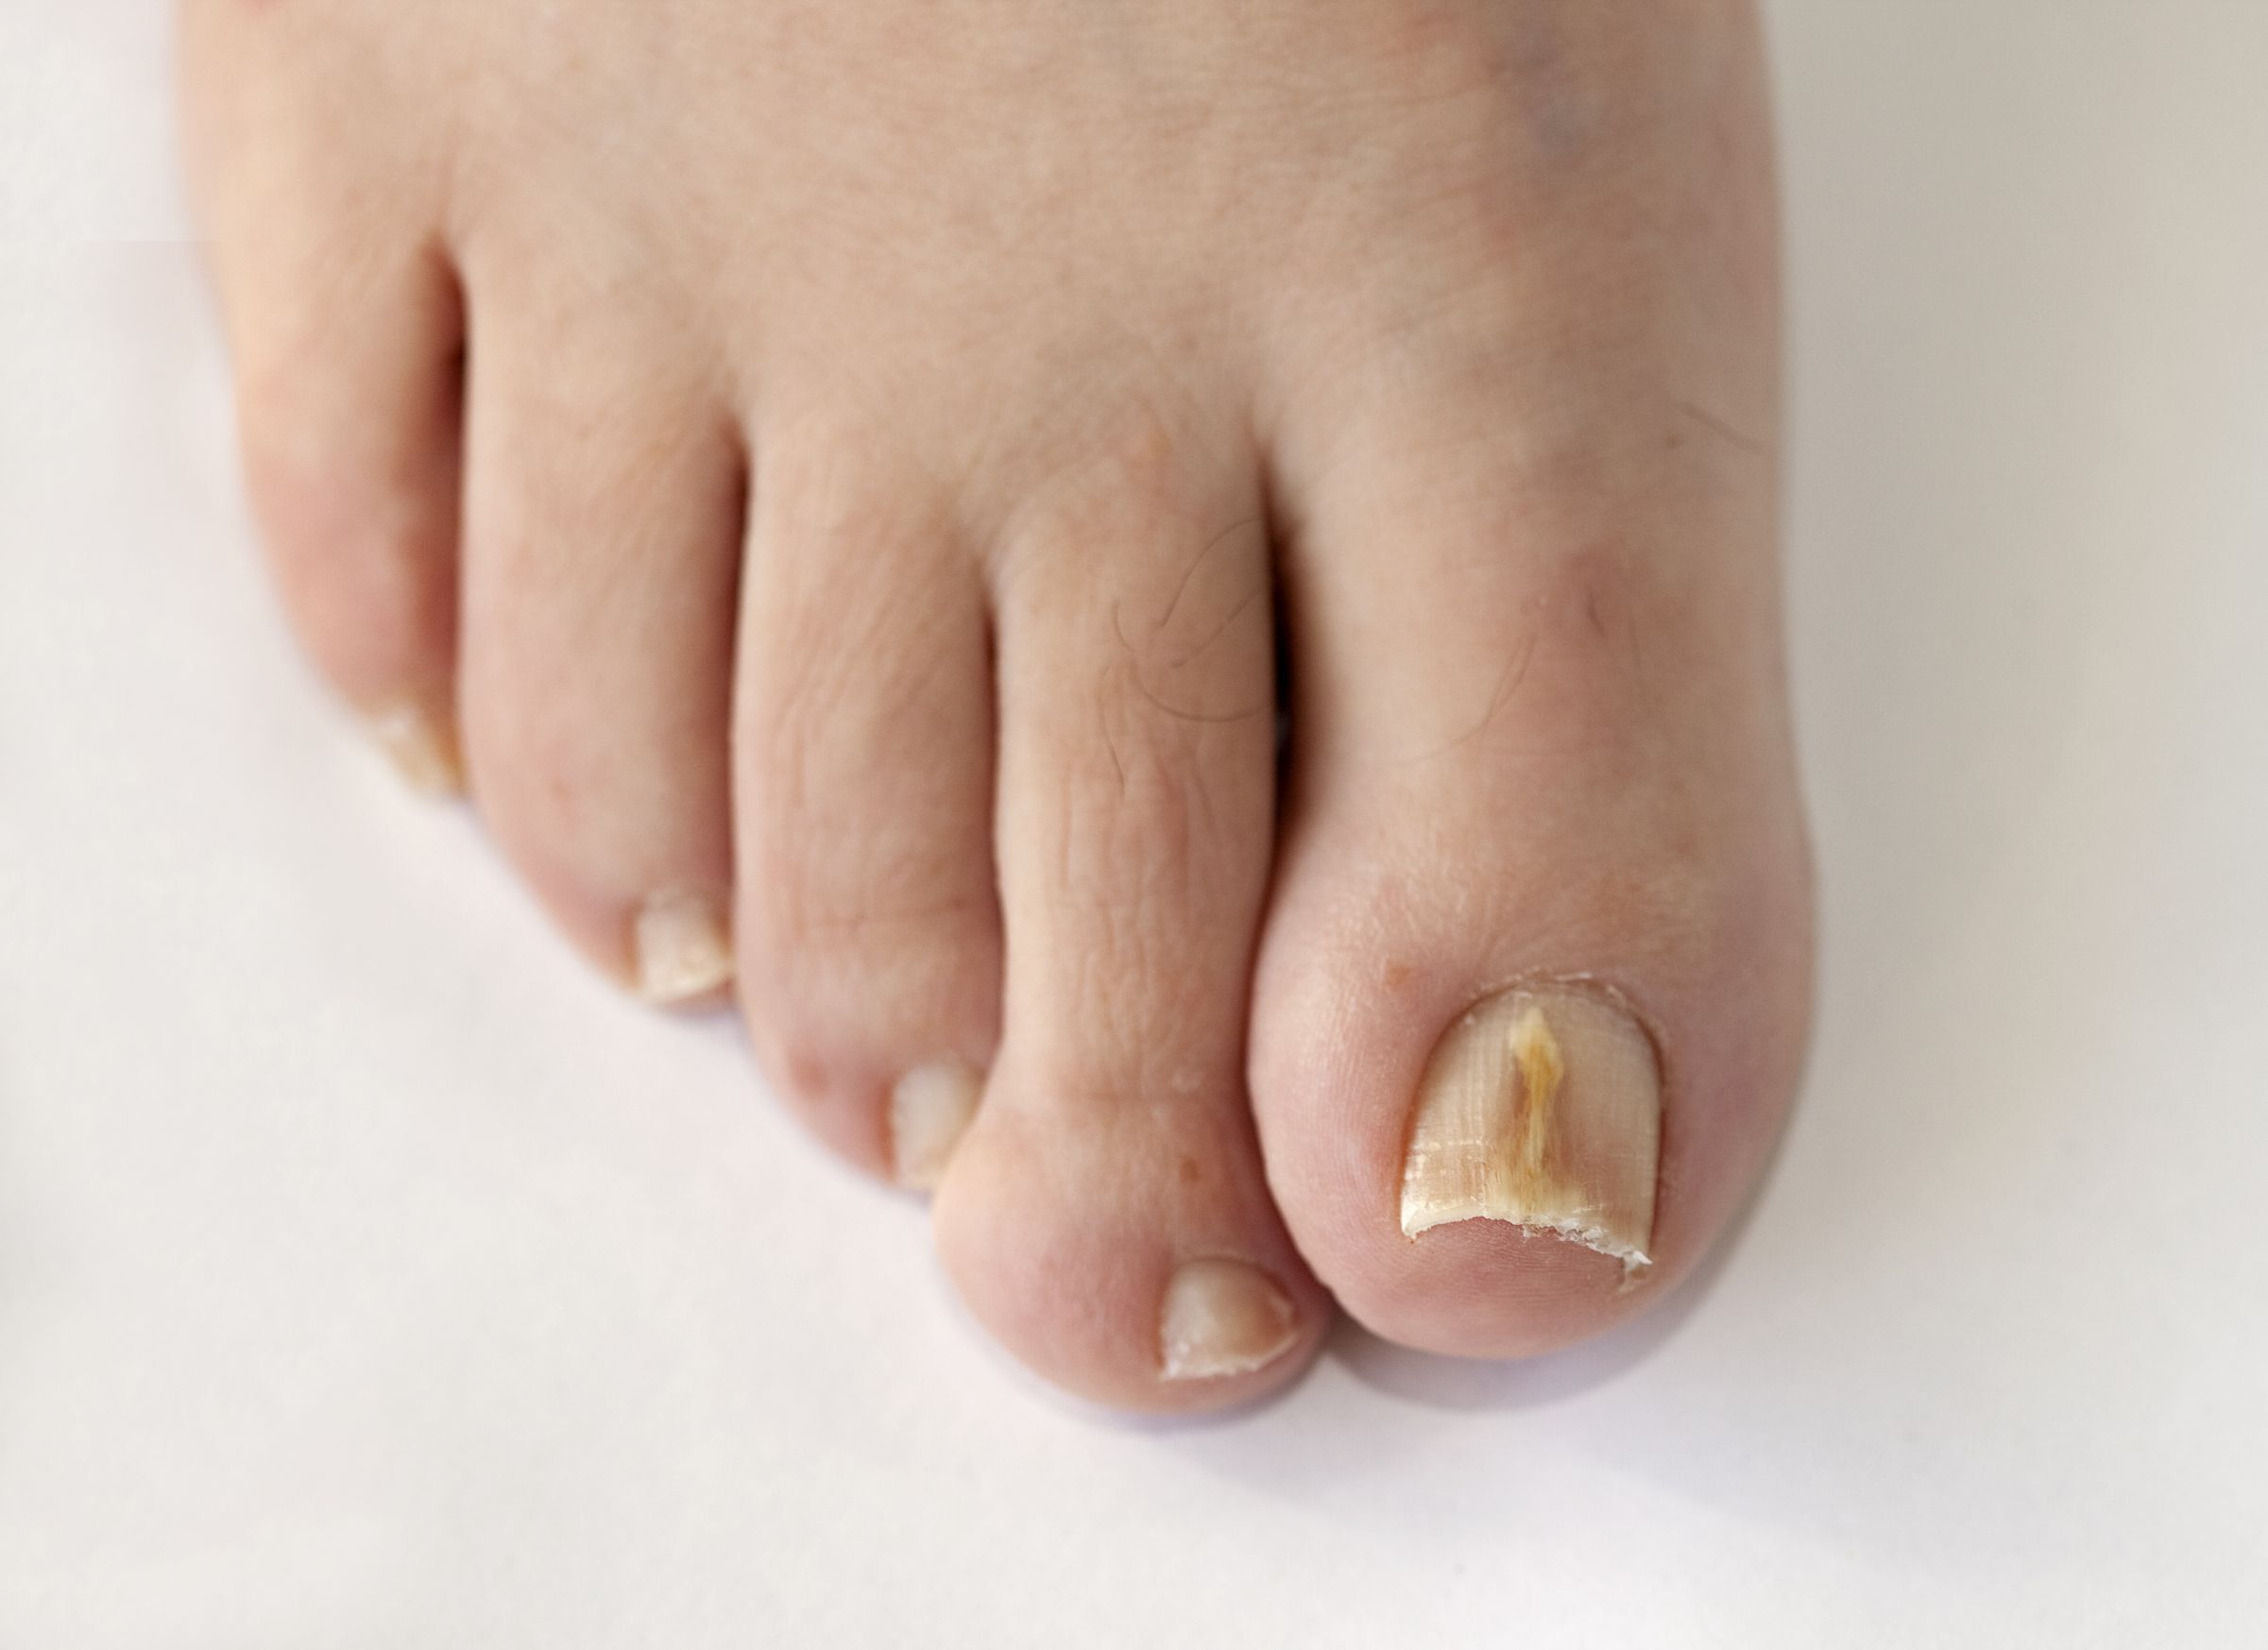 zolte paznokcie przyczyny i zapobieganie zel zmiekczajacy skorki pedzel do zdobien neonail